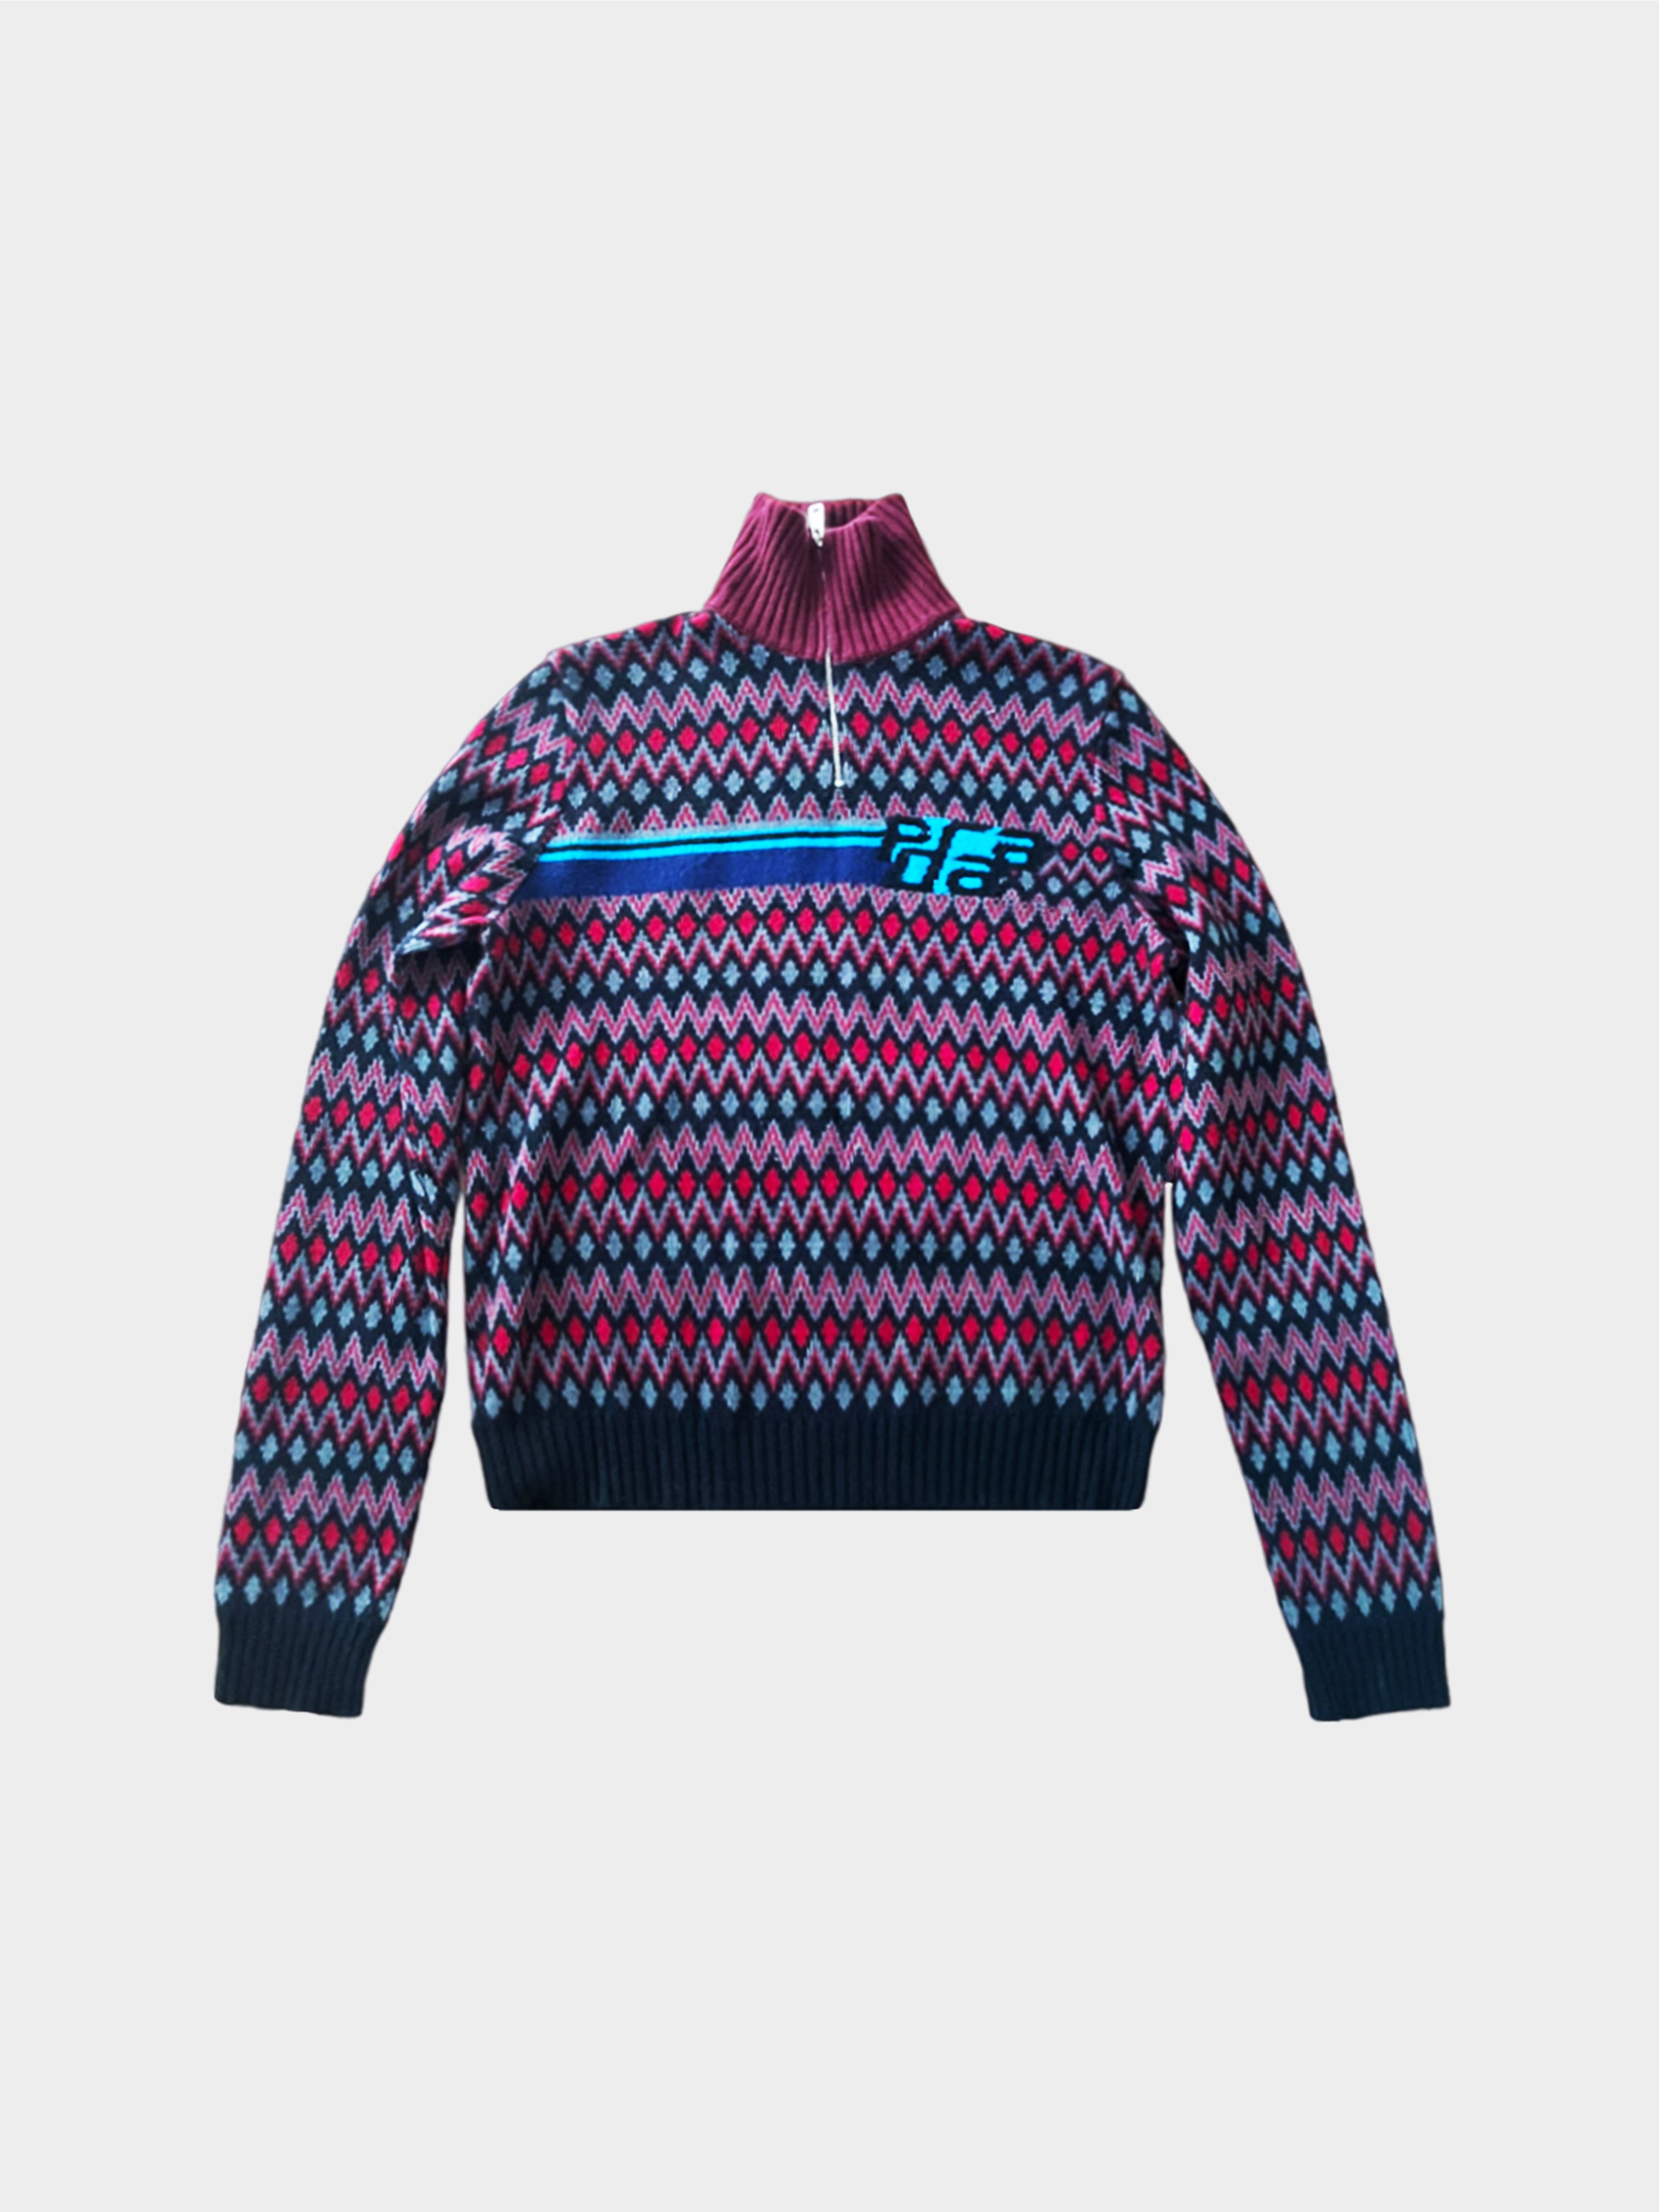 Prada FW 2018 3/4 Zip Graphic Burgundy Sweater